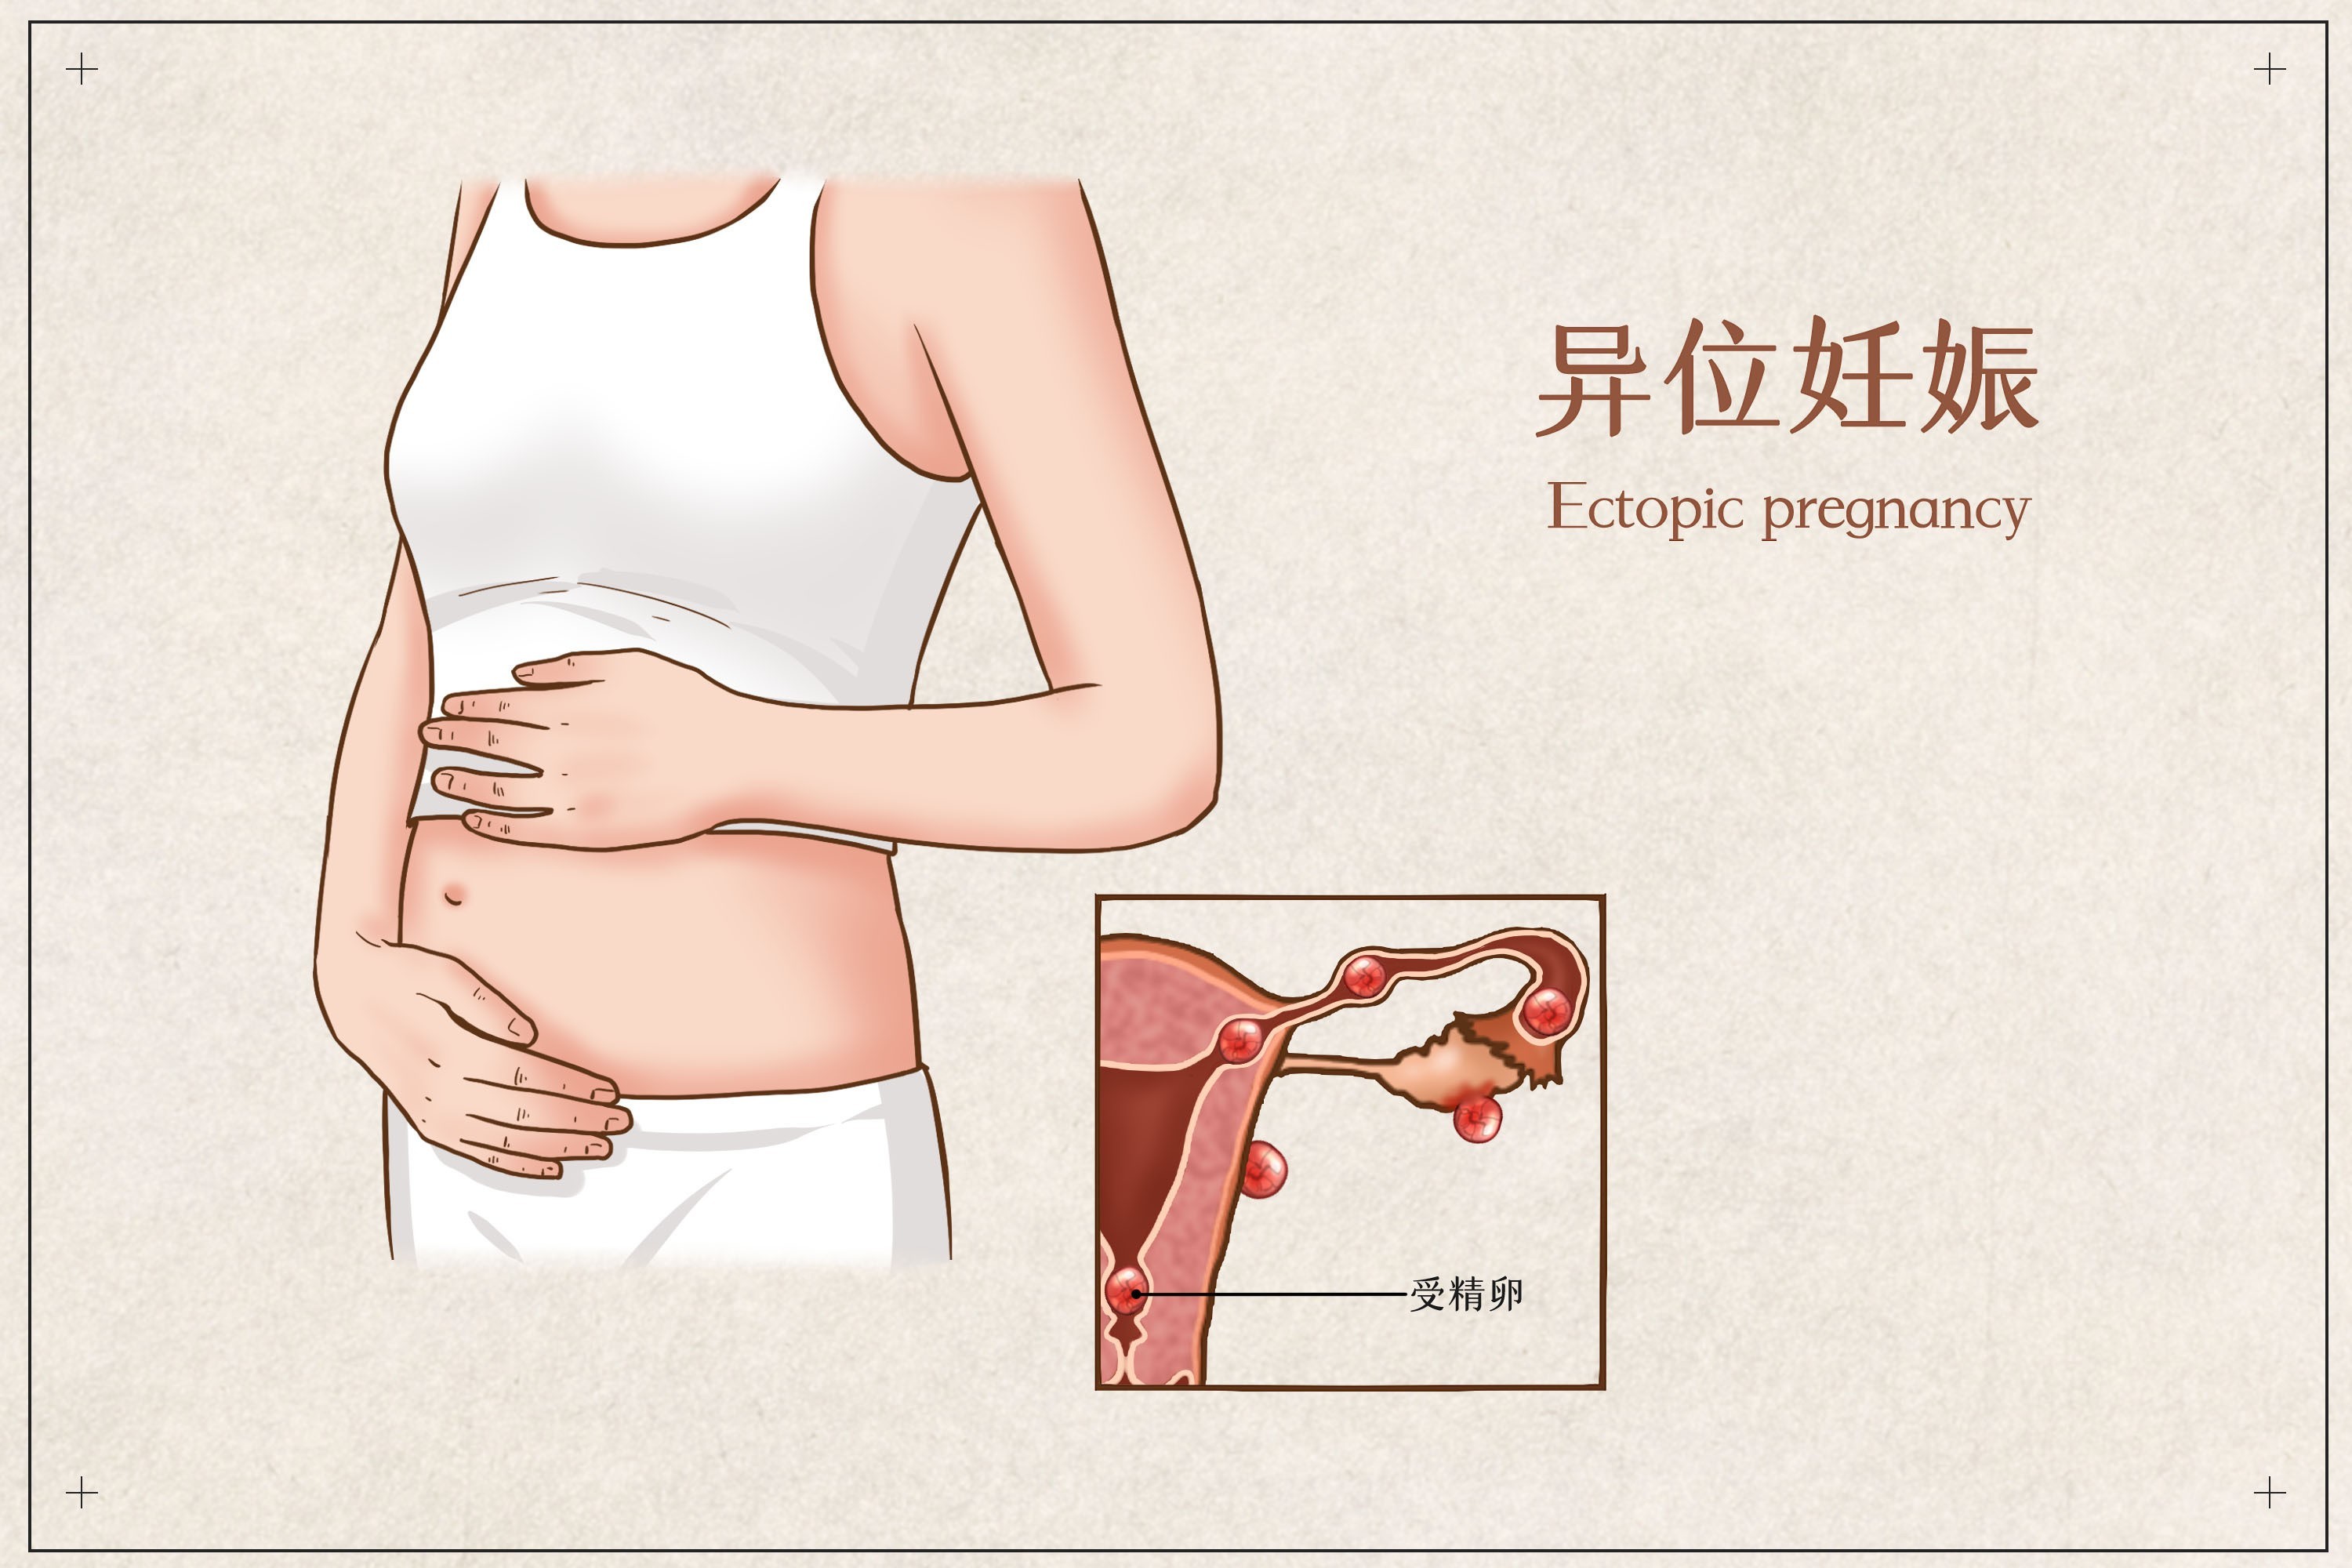 13,你好异位妊娠是指受精卵种植在子宫体腔以外部位的妊娠,临床上习称